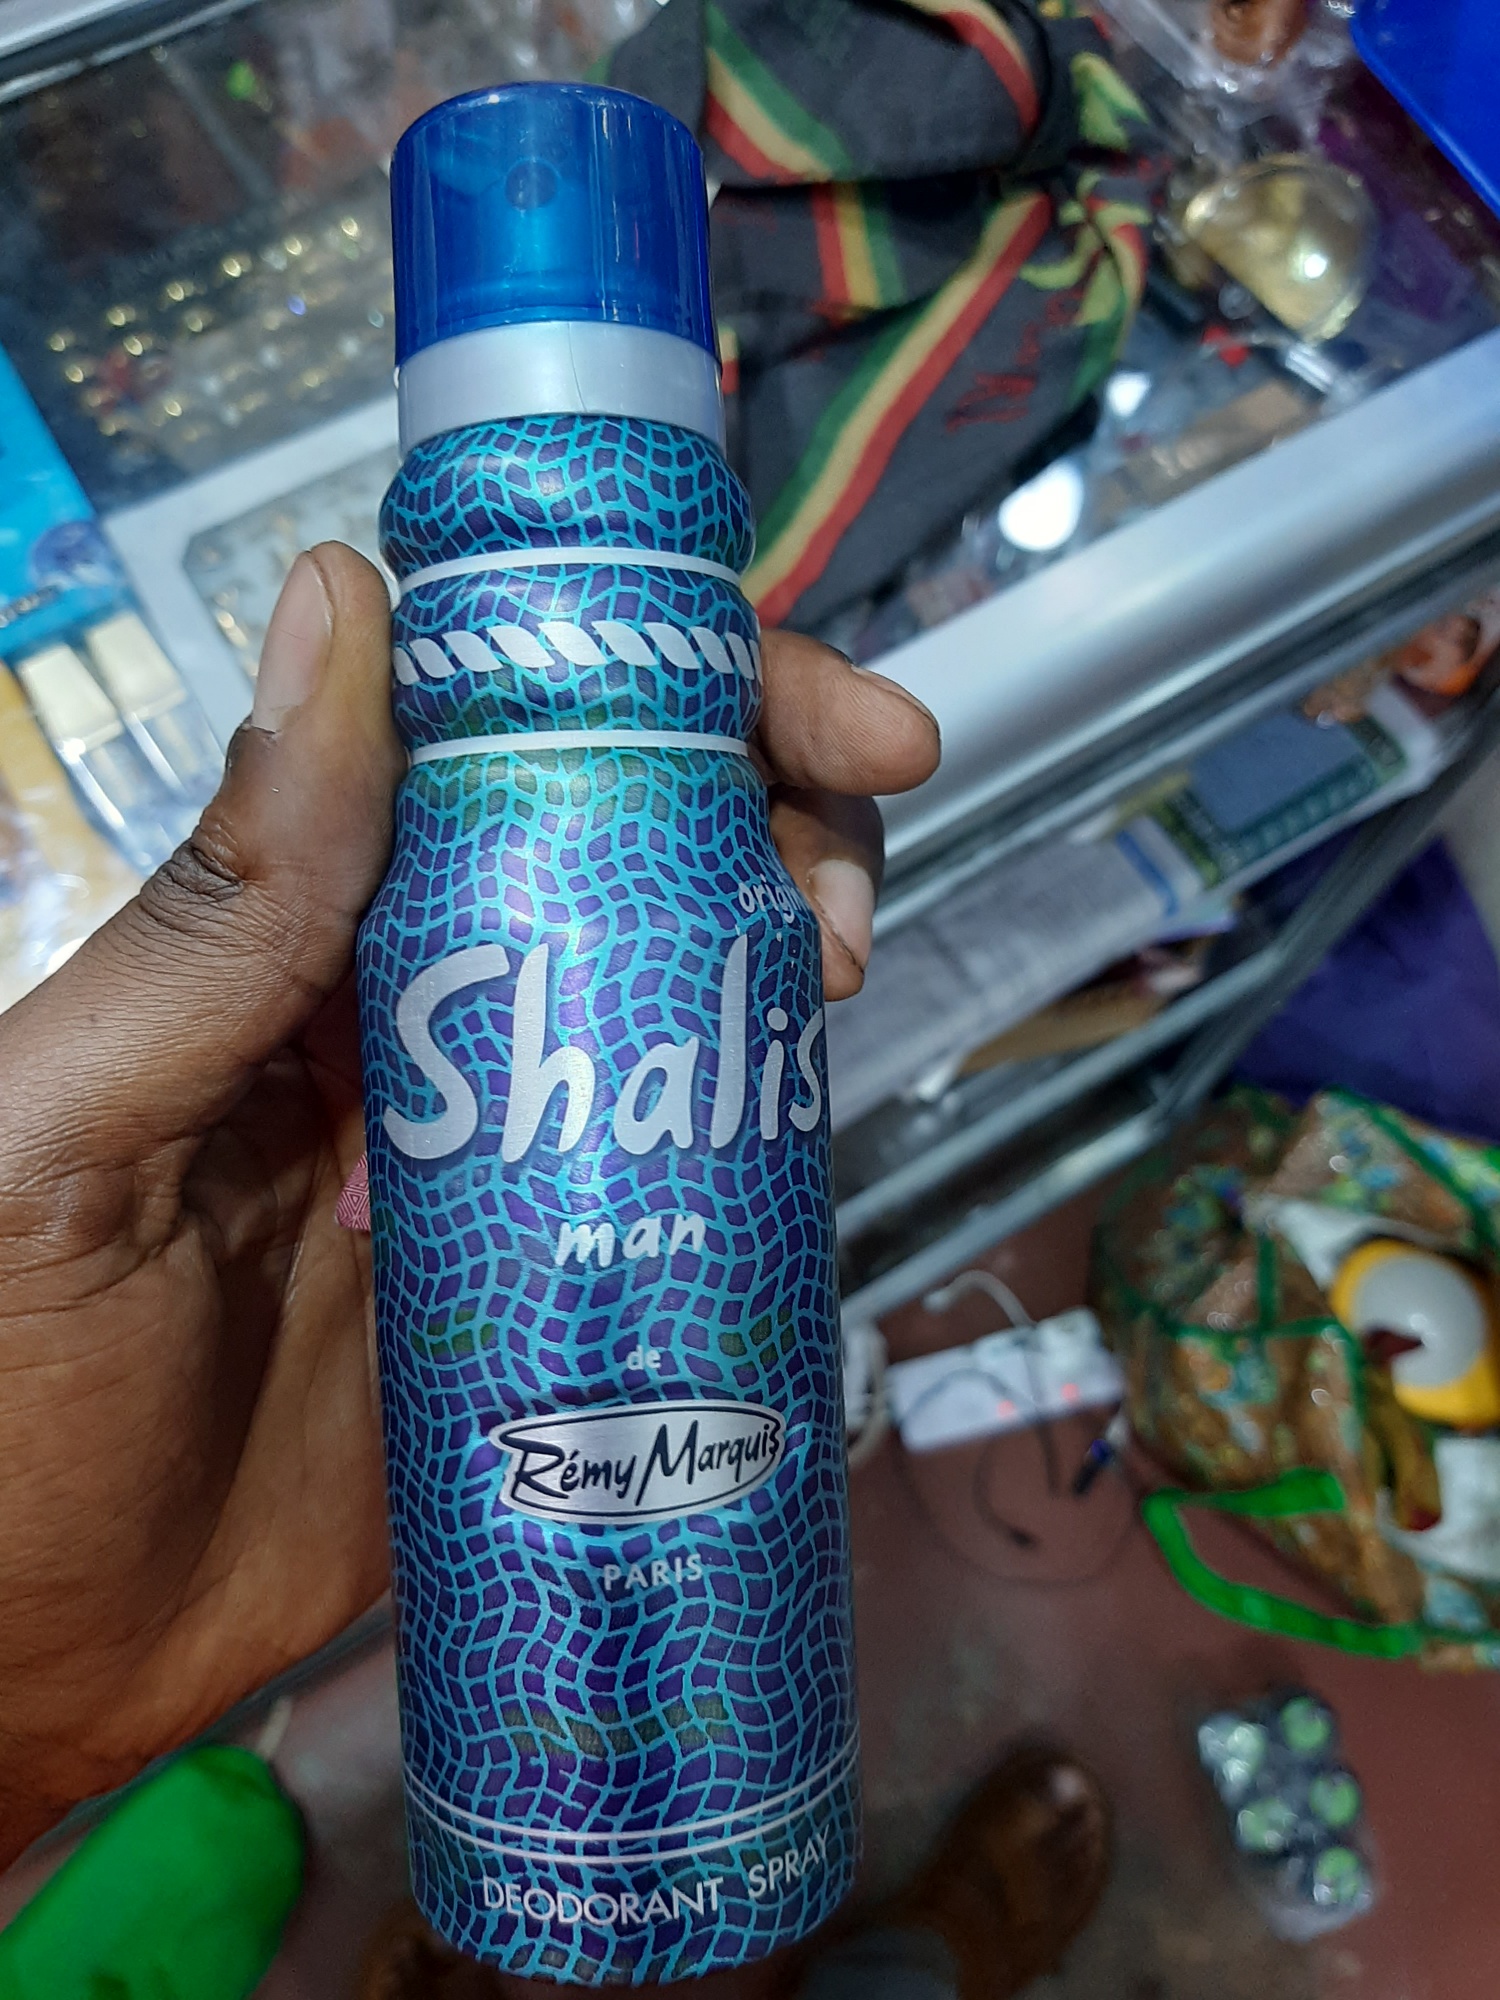 Shalis Body Spray